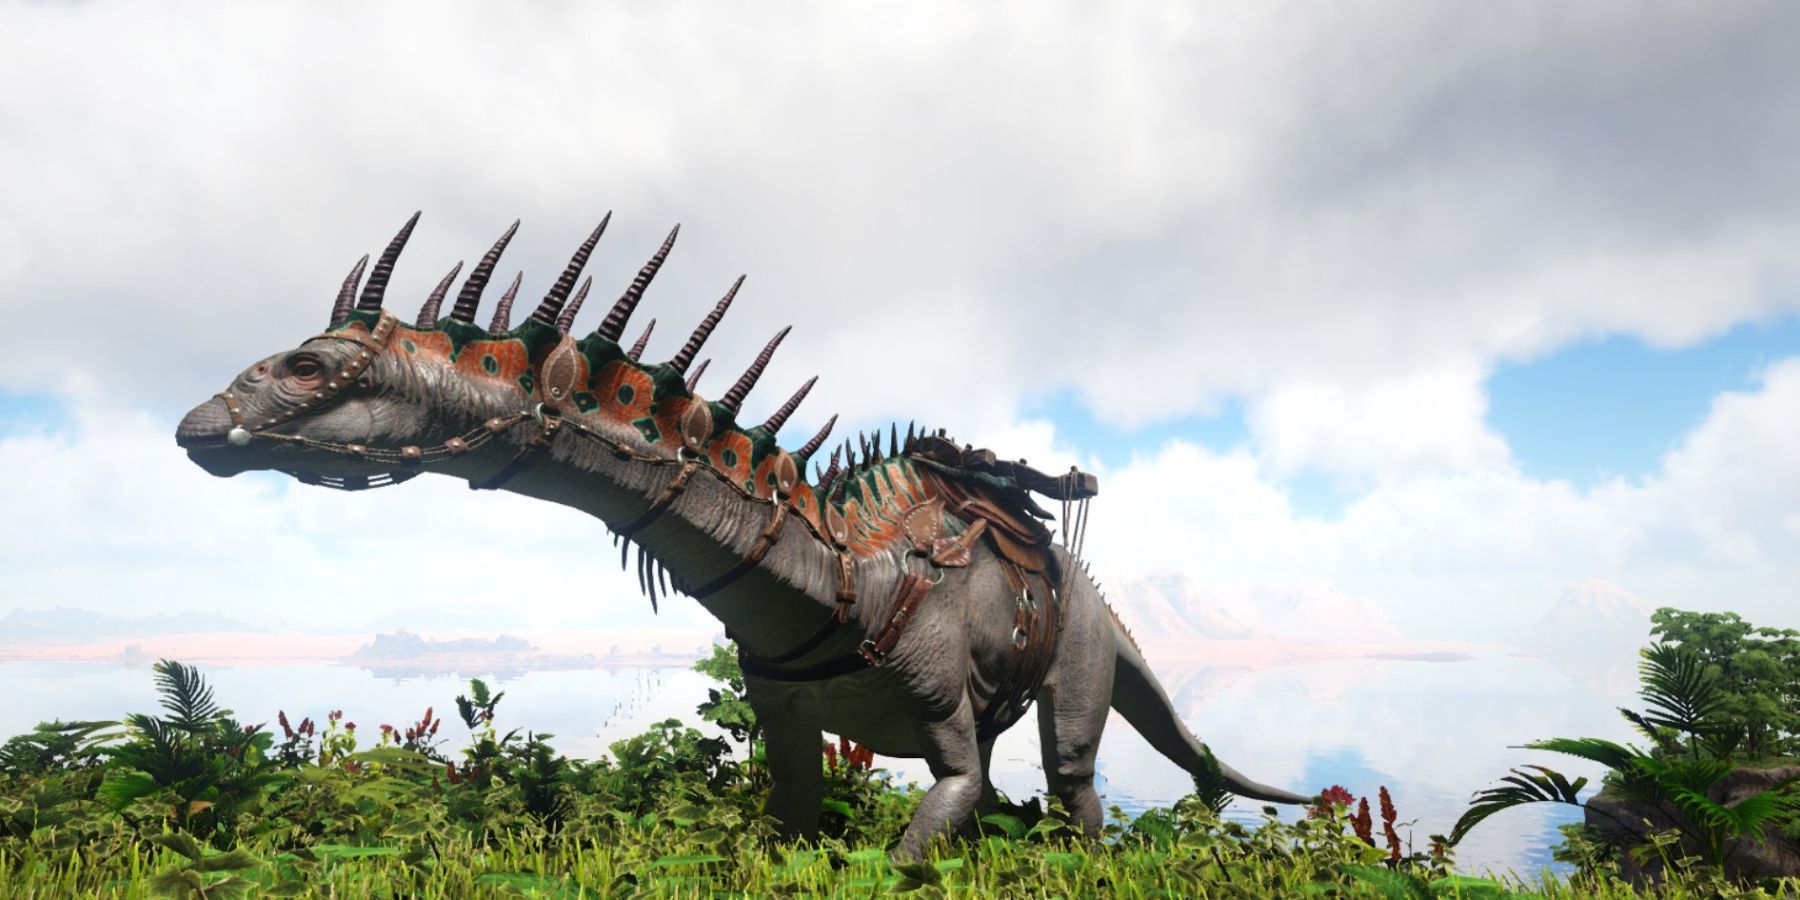 A tamed Amargasaurus